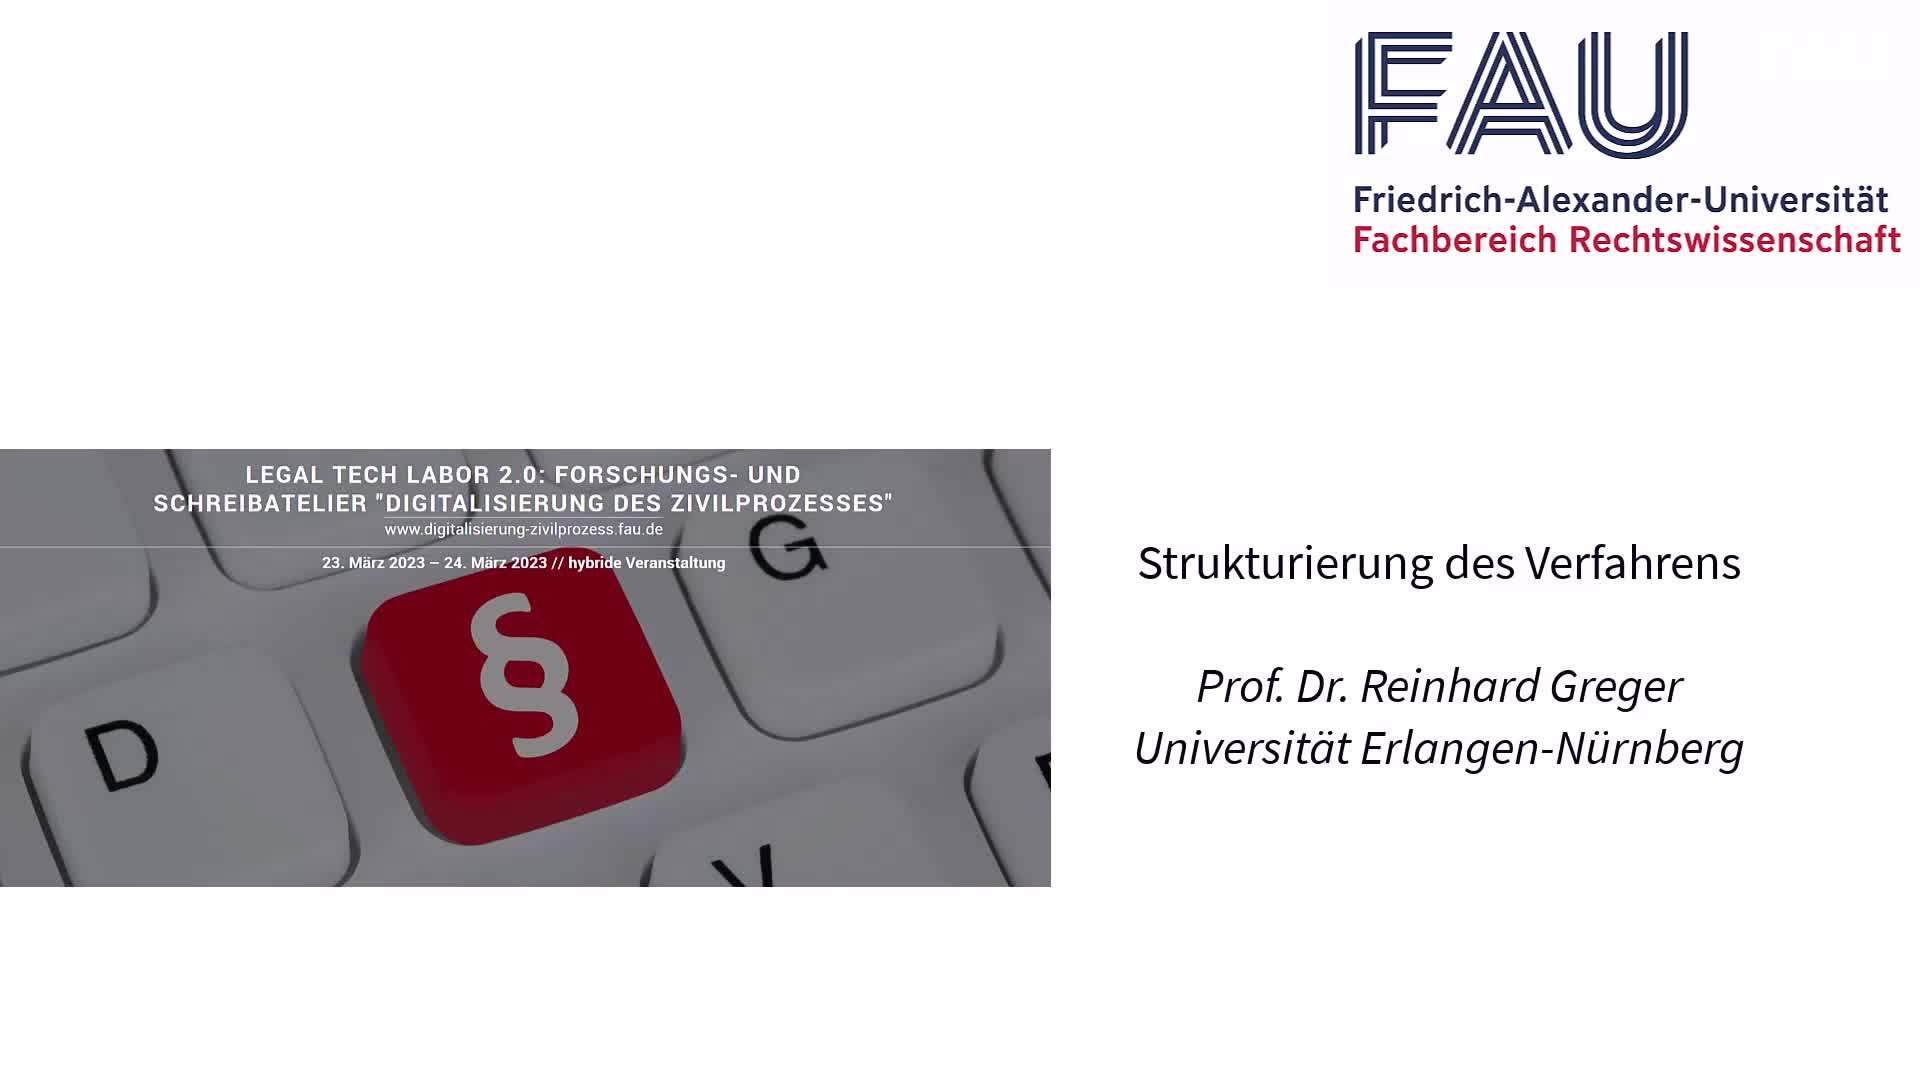 Digitalisierung des Zivilprozesses: Strukturierung des Verfahrens (Prof. Dr. Reinhard Greger) preview image